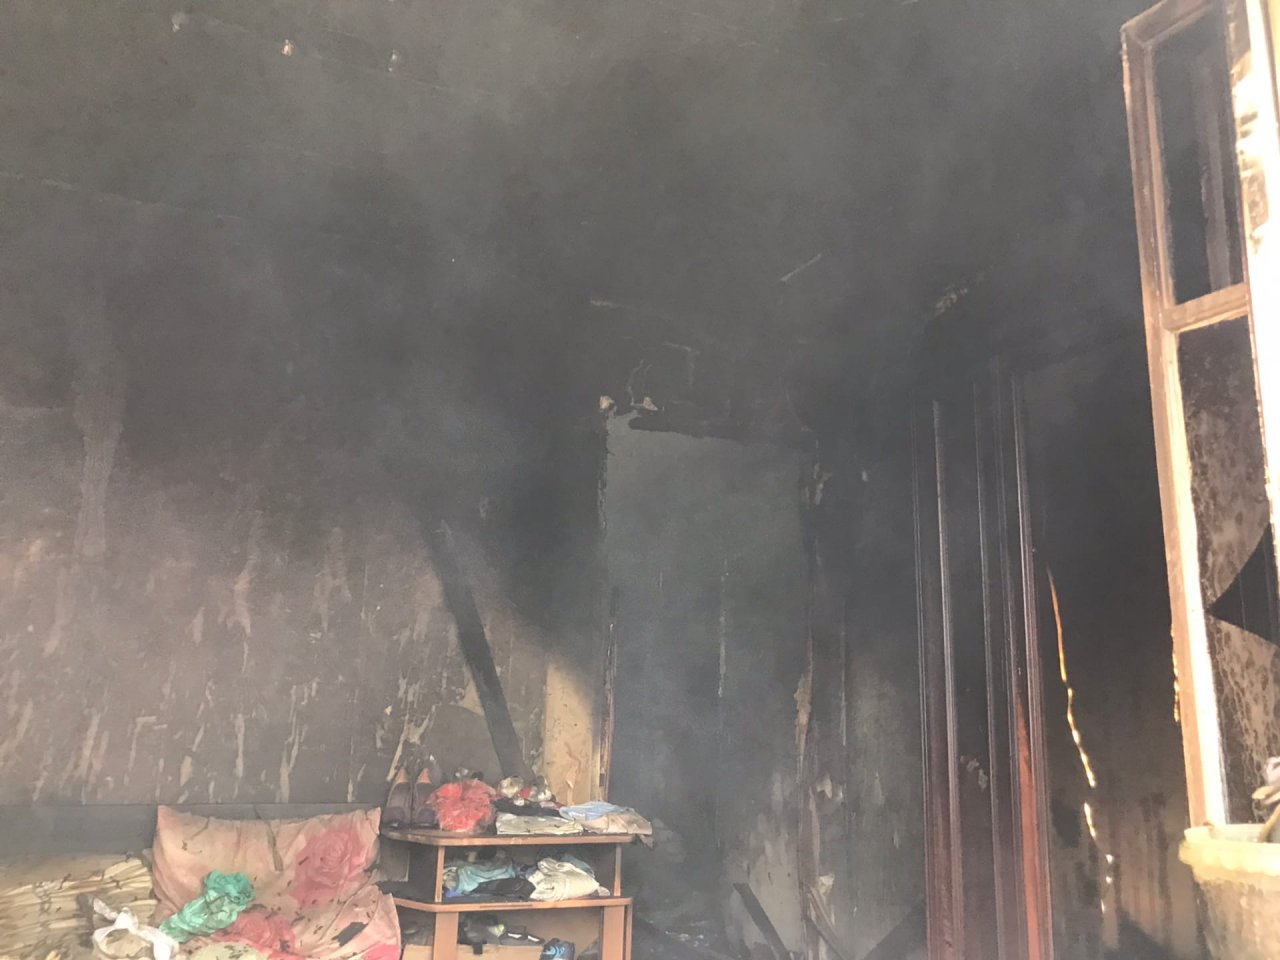 Жилая квартира сгорела в поселке Новосмолинский